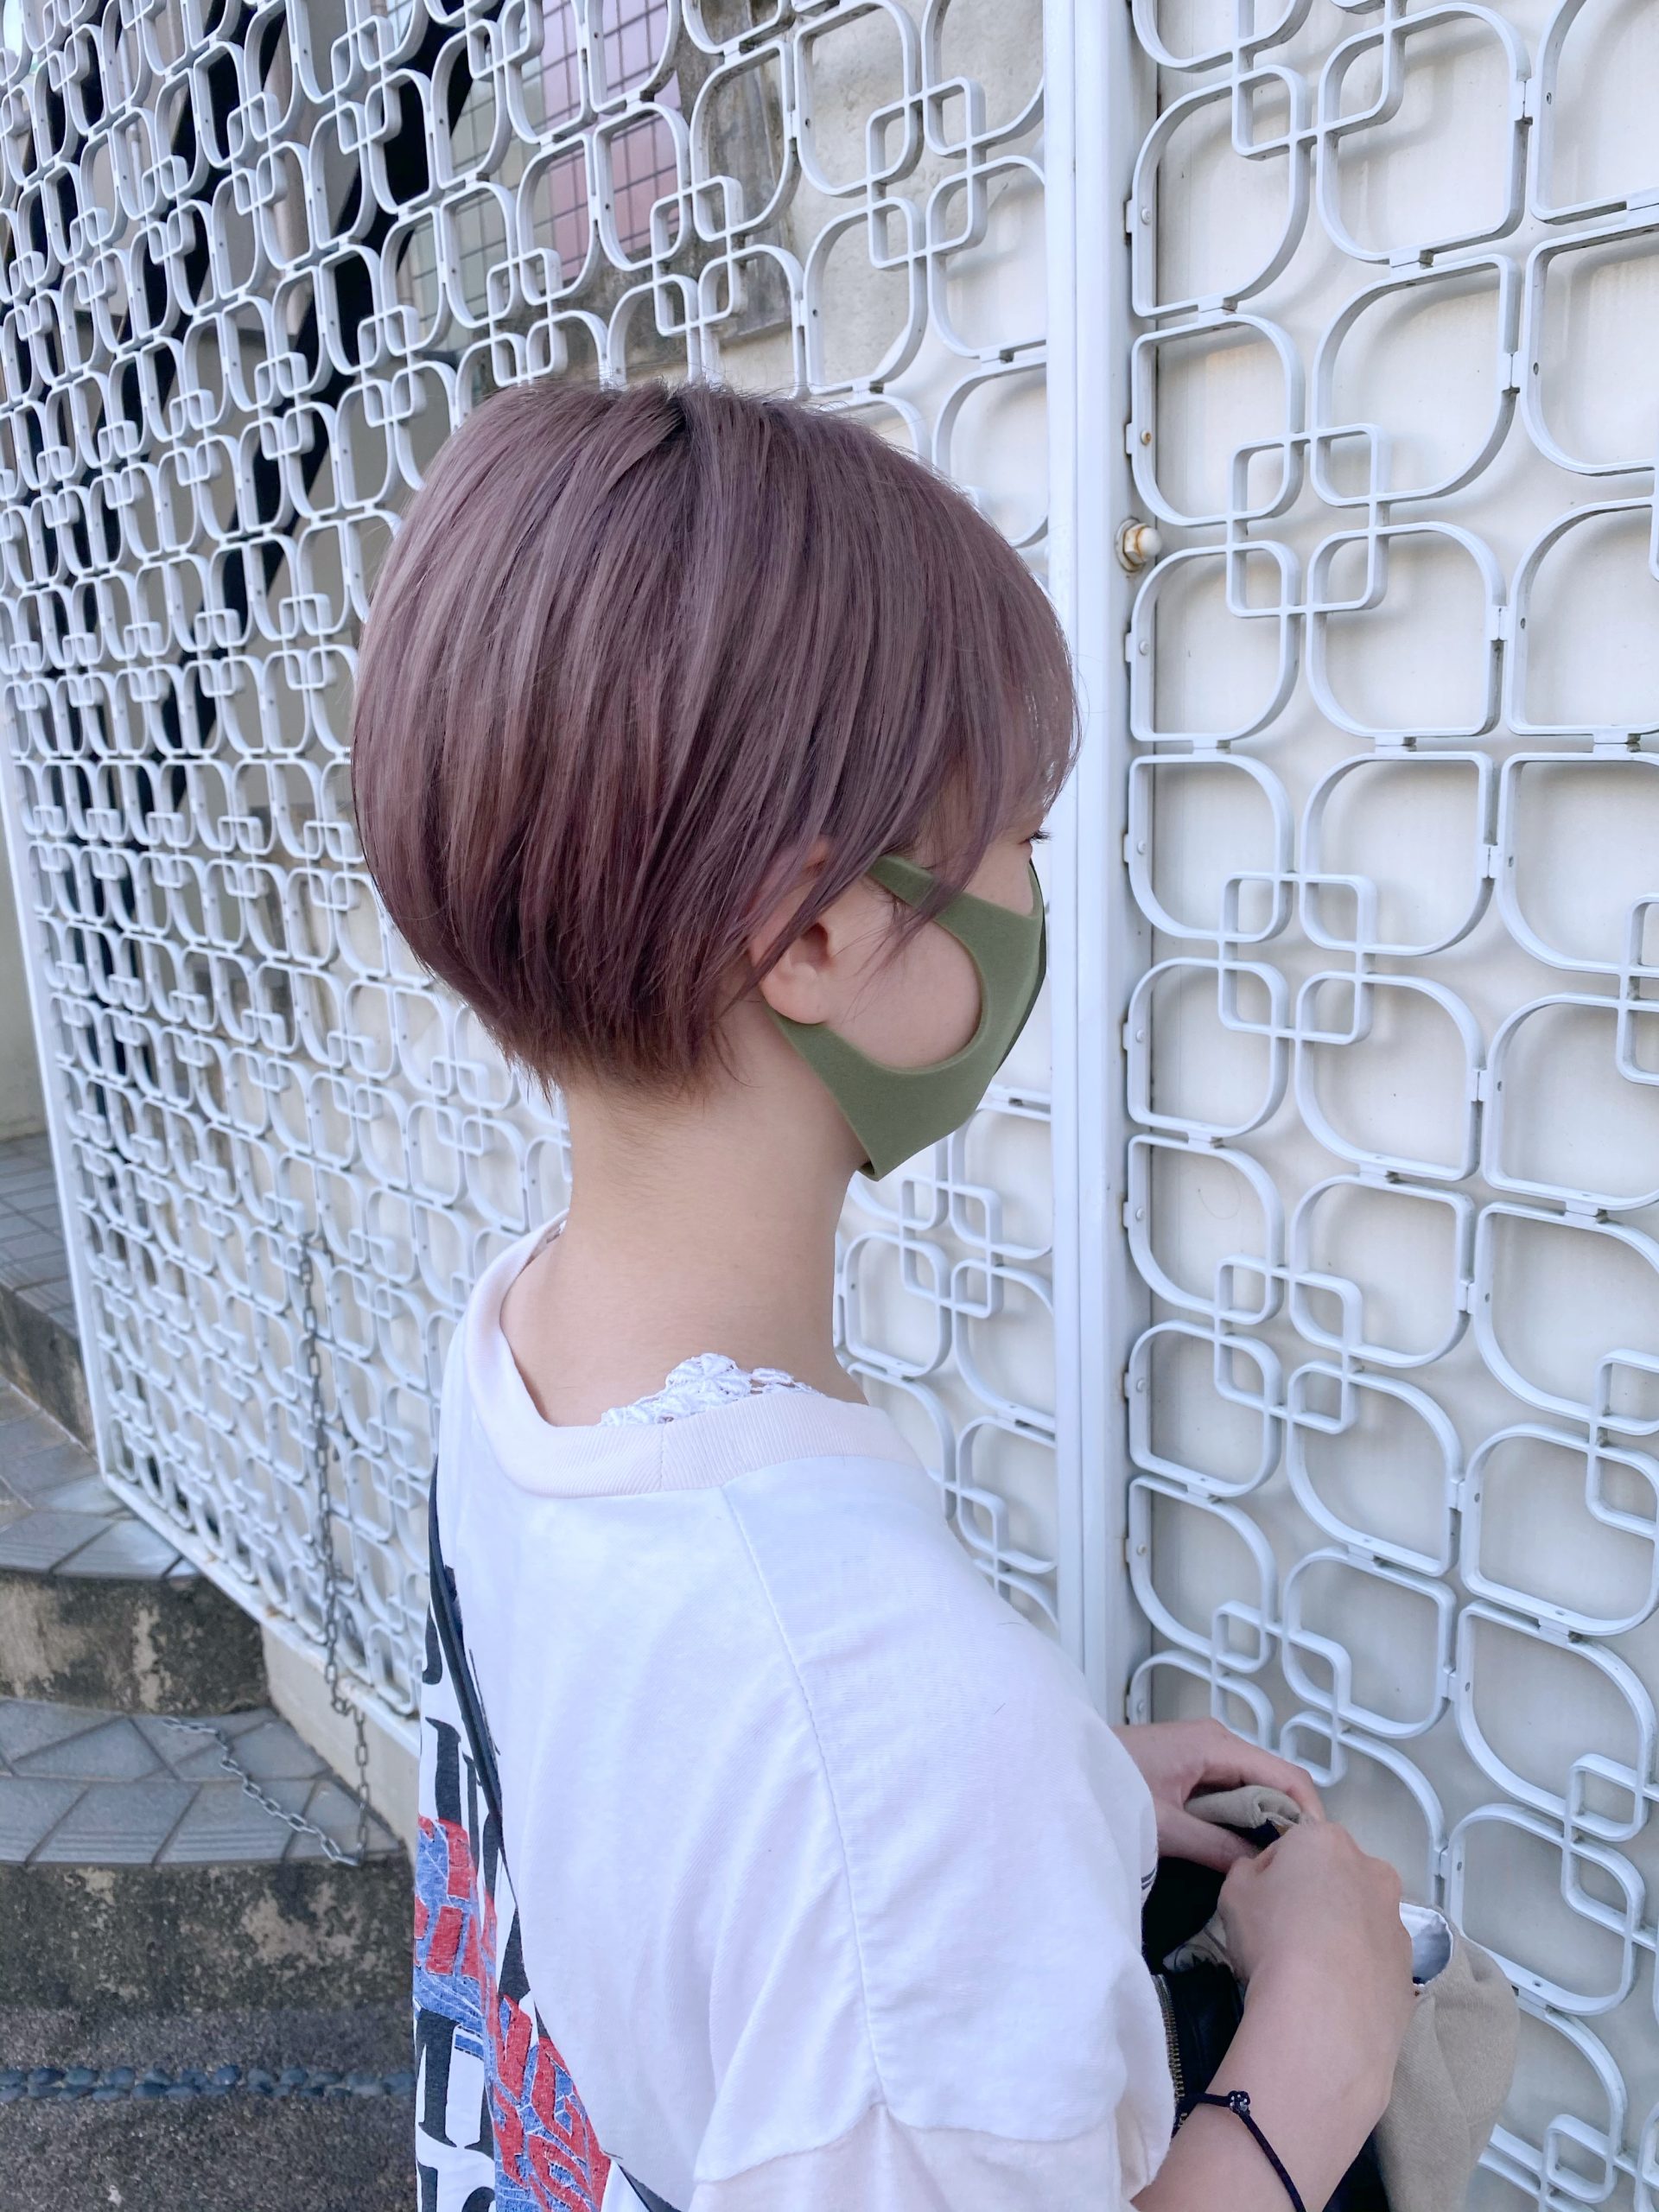 オーダー激増 ショートヘアの印象の違い 奈良 京都 大阪の美容室 ハピネス